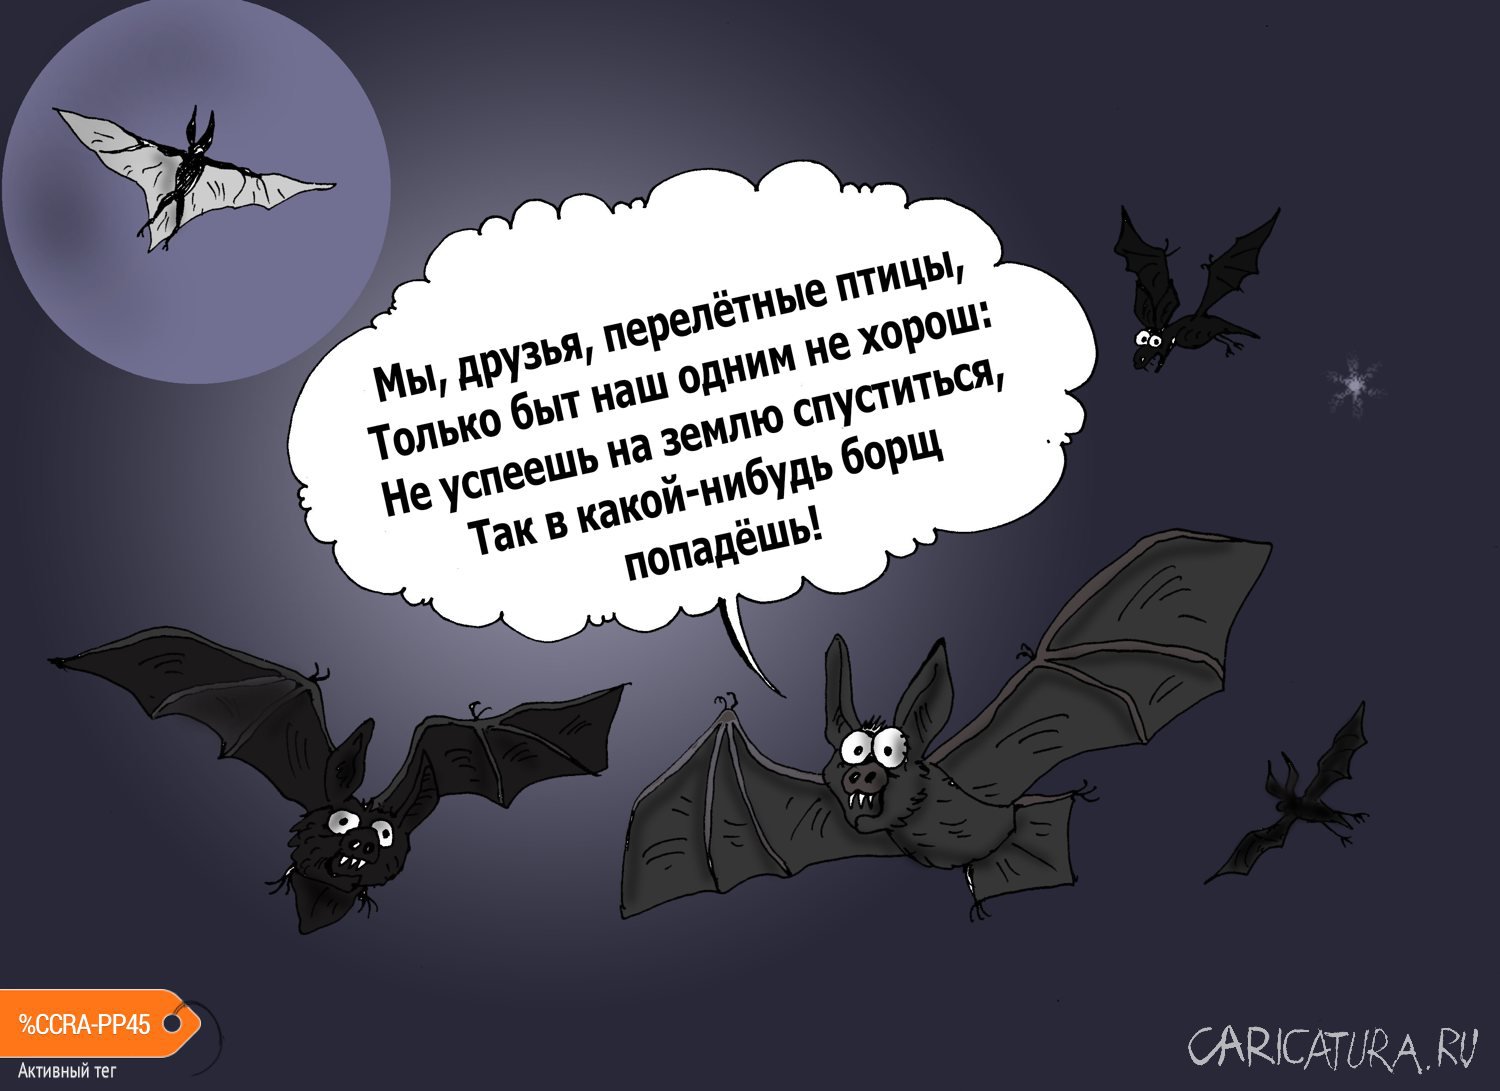 Карикатура "Пандемия", Валерий Тарасенко